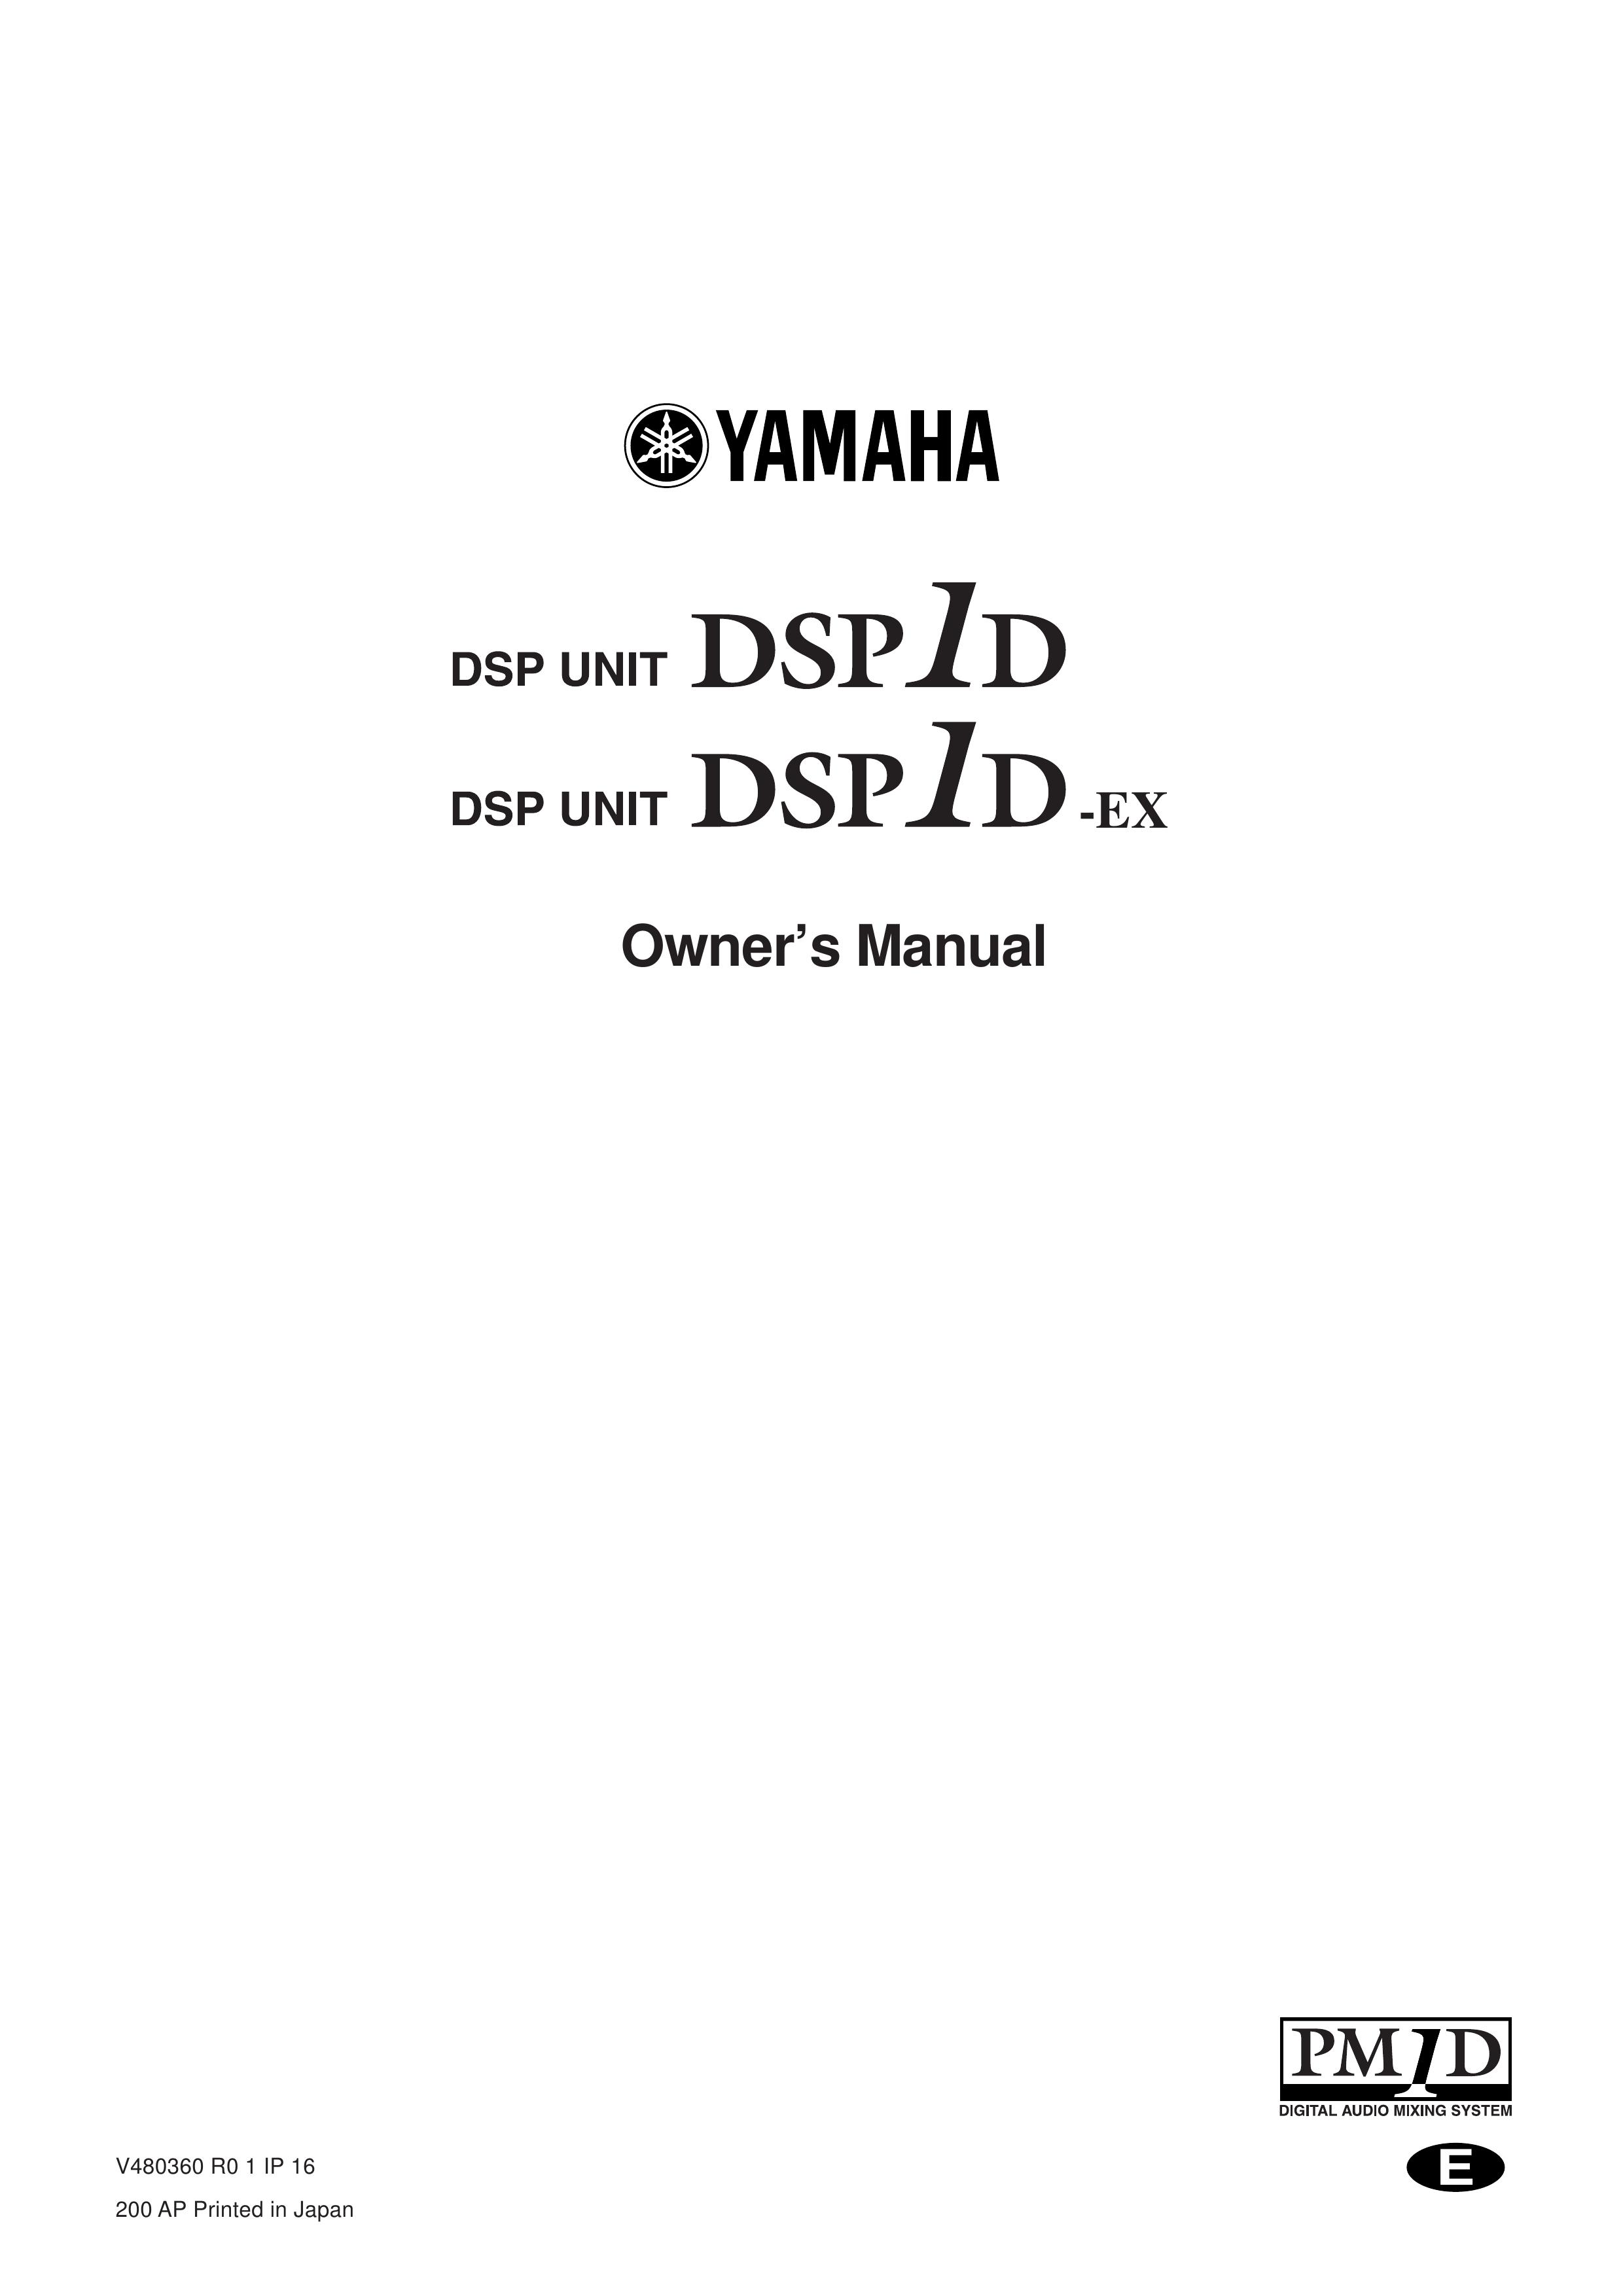 Yamaha DSP1D-EX Music Mixer User Manual